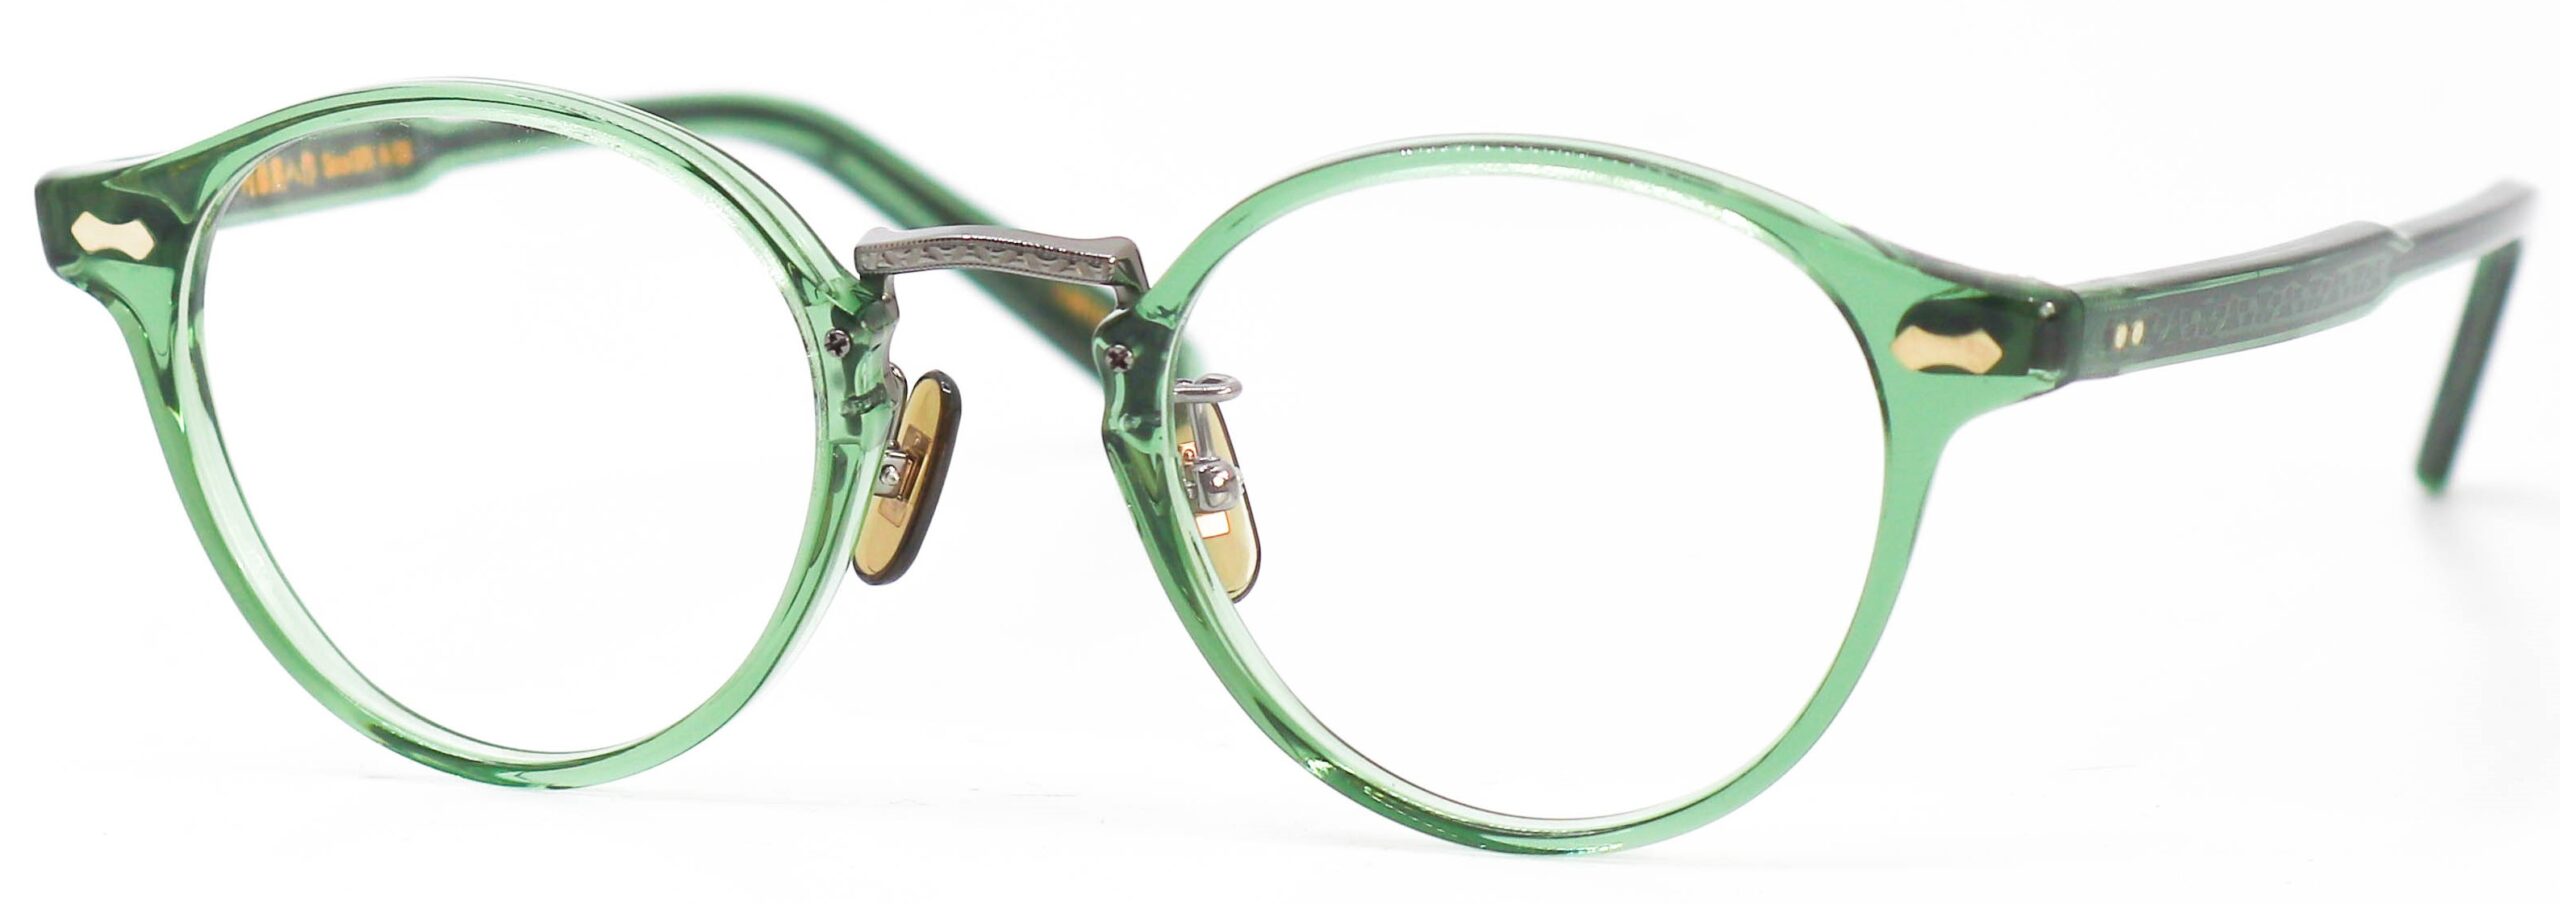 眼鏡のカラータイプC-4 Light-Green/Gray